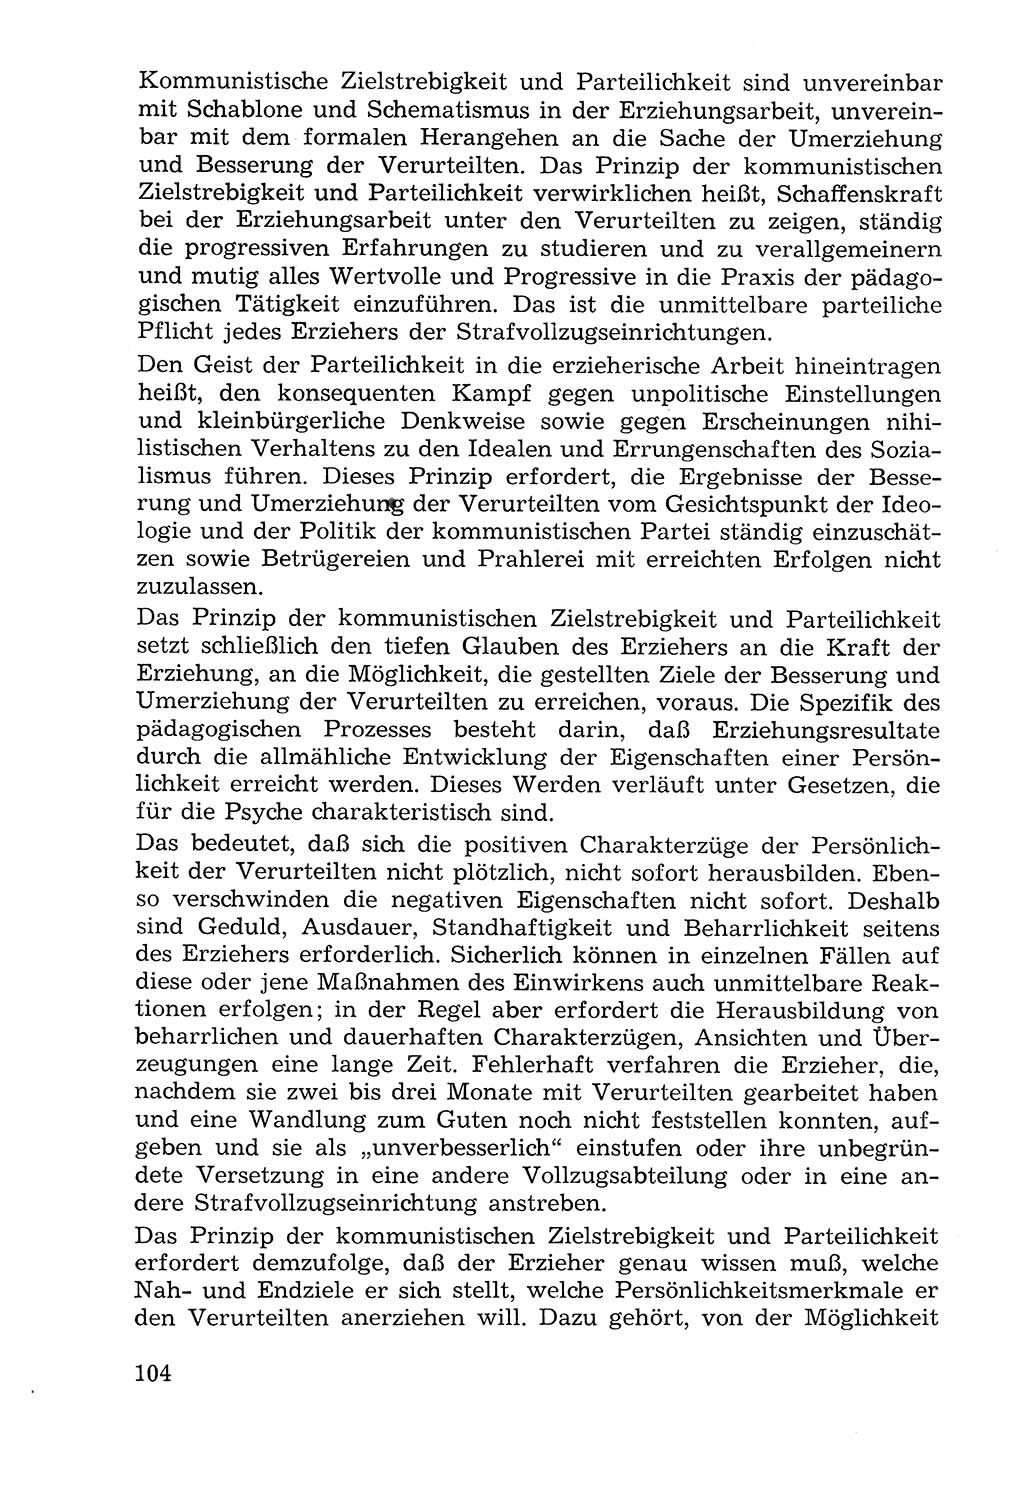 Lehrbuch der Strafvollzugspädagogik [Deutsche Demokratische Republik (DDR)] 1969, Seite 104 (Lb. SV-Pd. DDR 1969, S. 104)